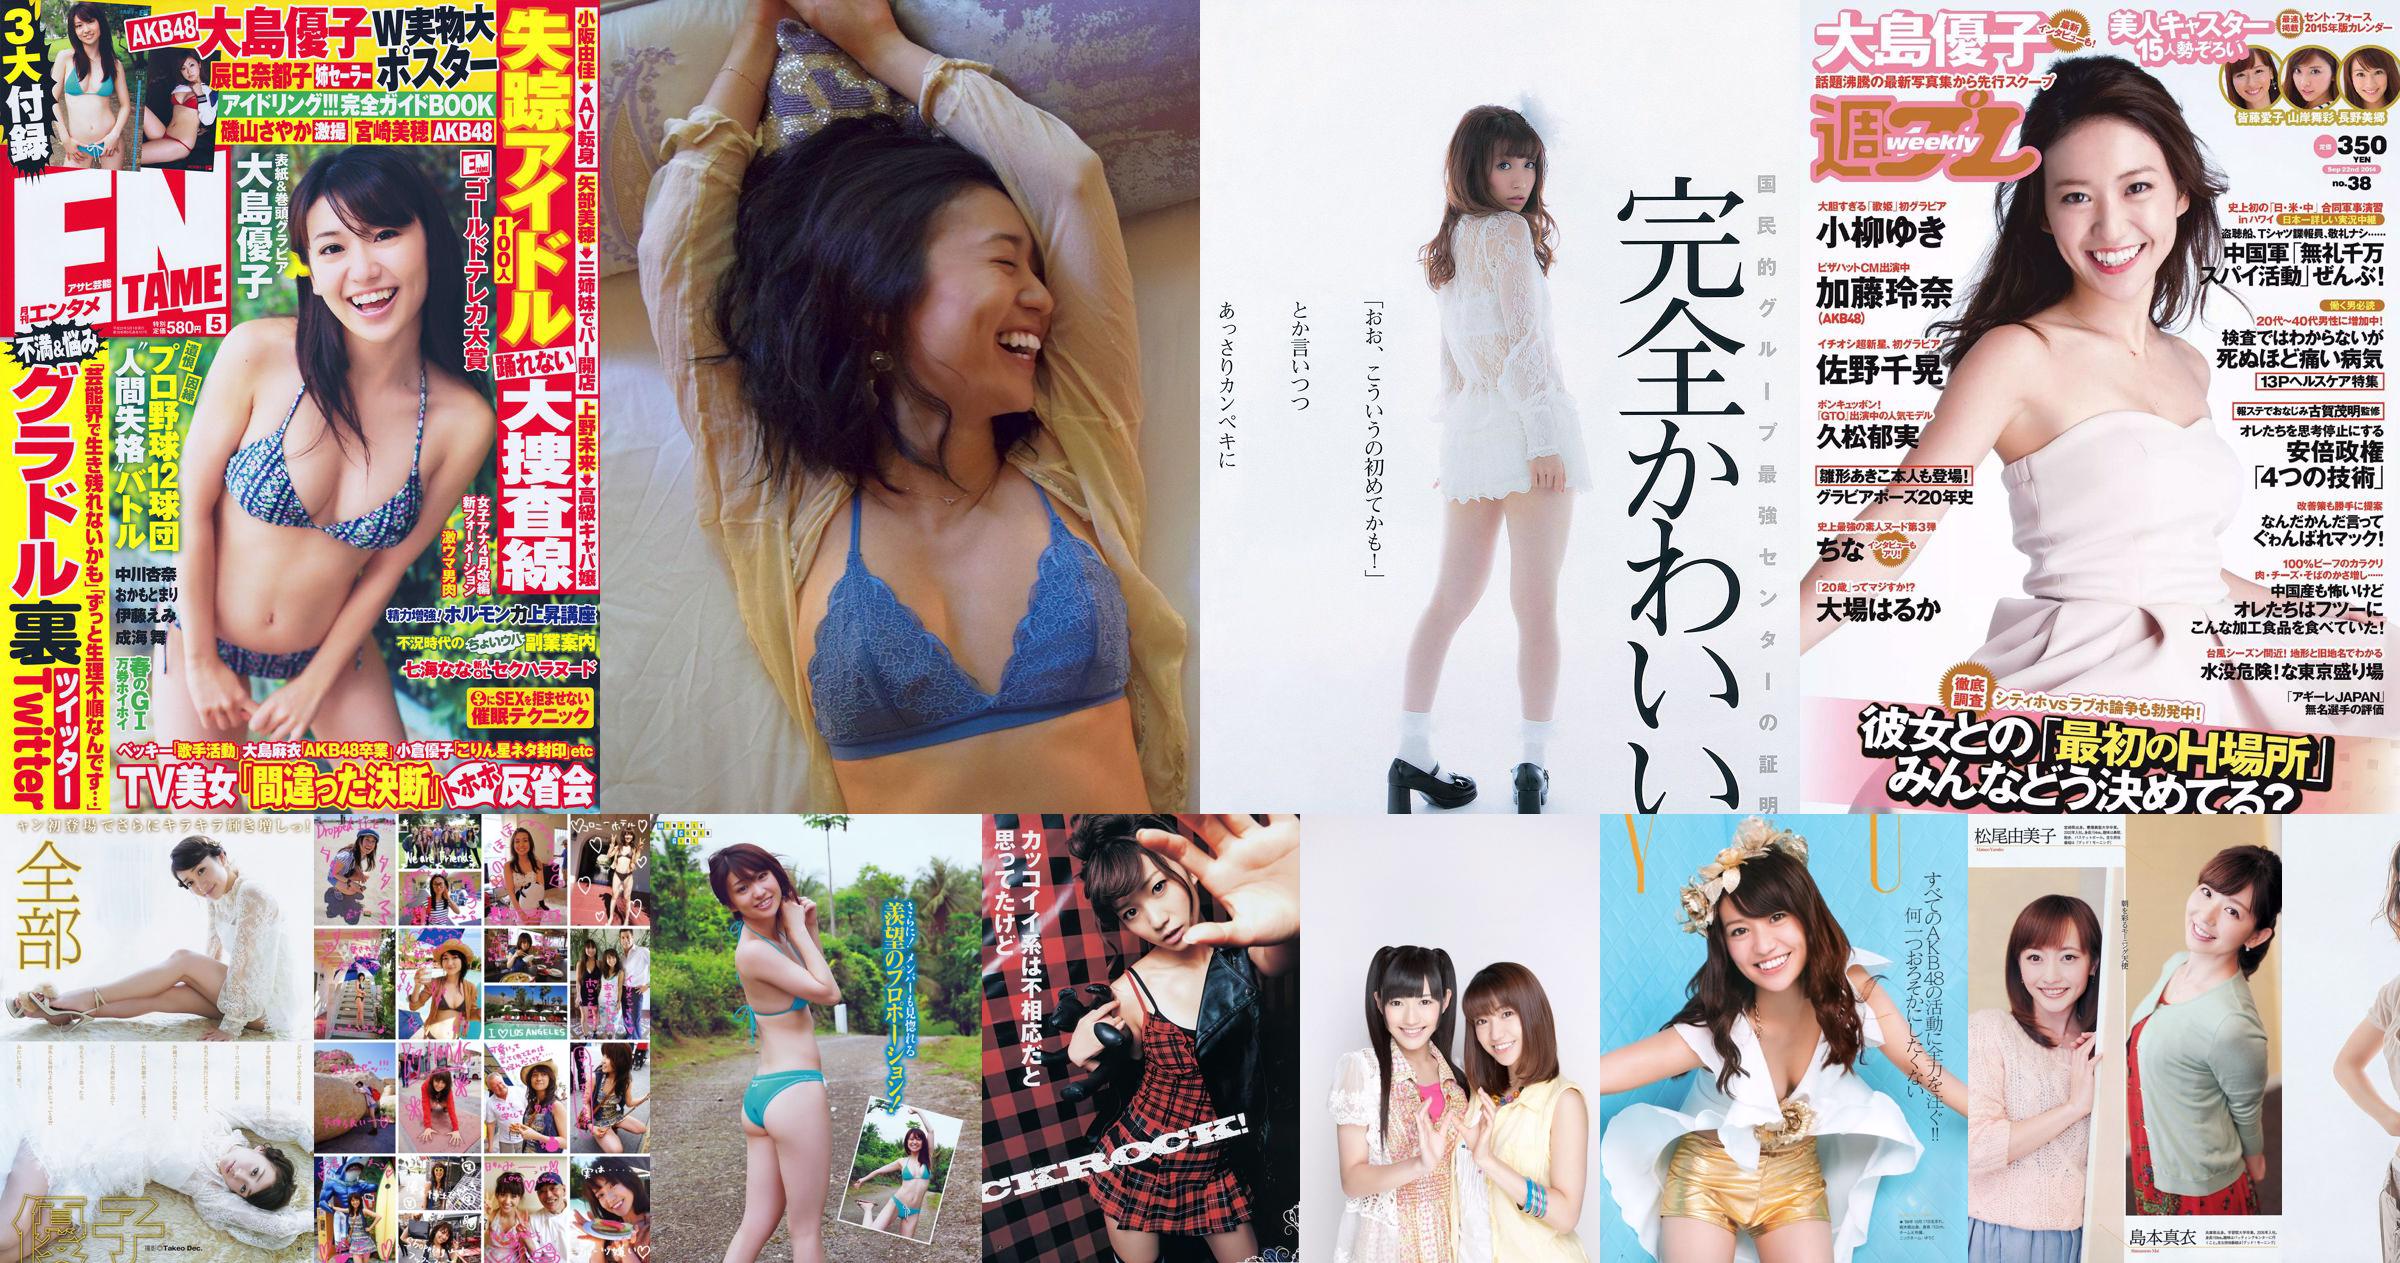 [Young Magazine] Yuko Oshima Mai Shinuchi 2015 No.20 Photograph No.632c71 Page 3